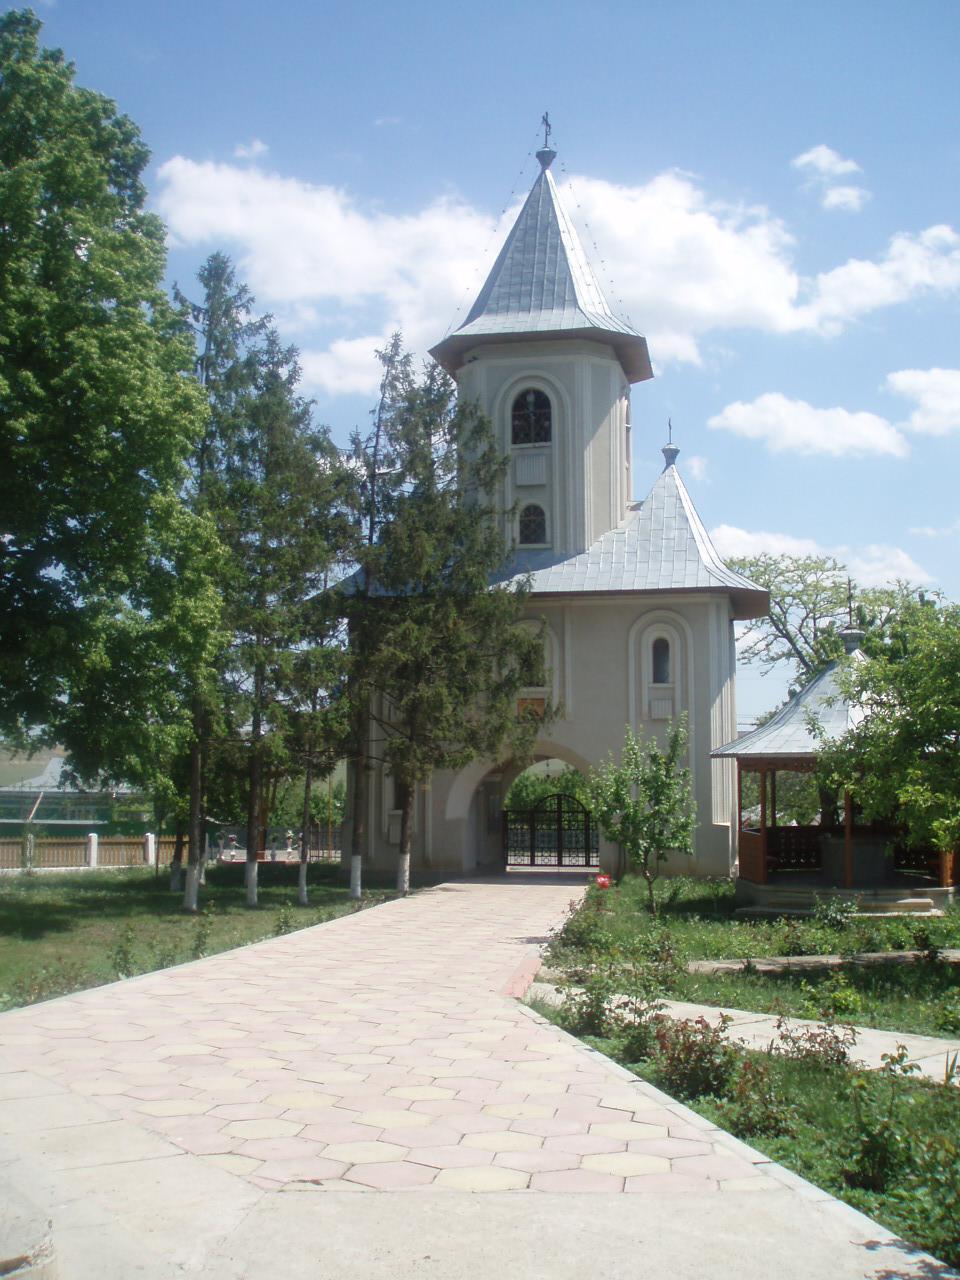 Turnul clopotniță - vedere din incinta bisericii